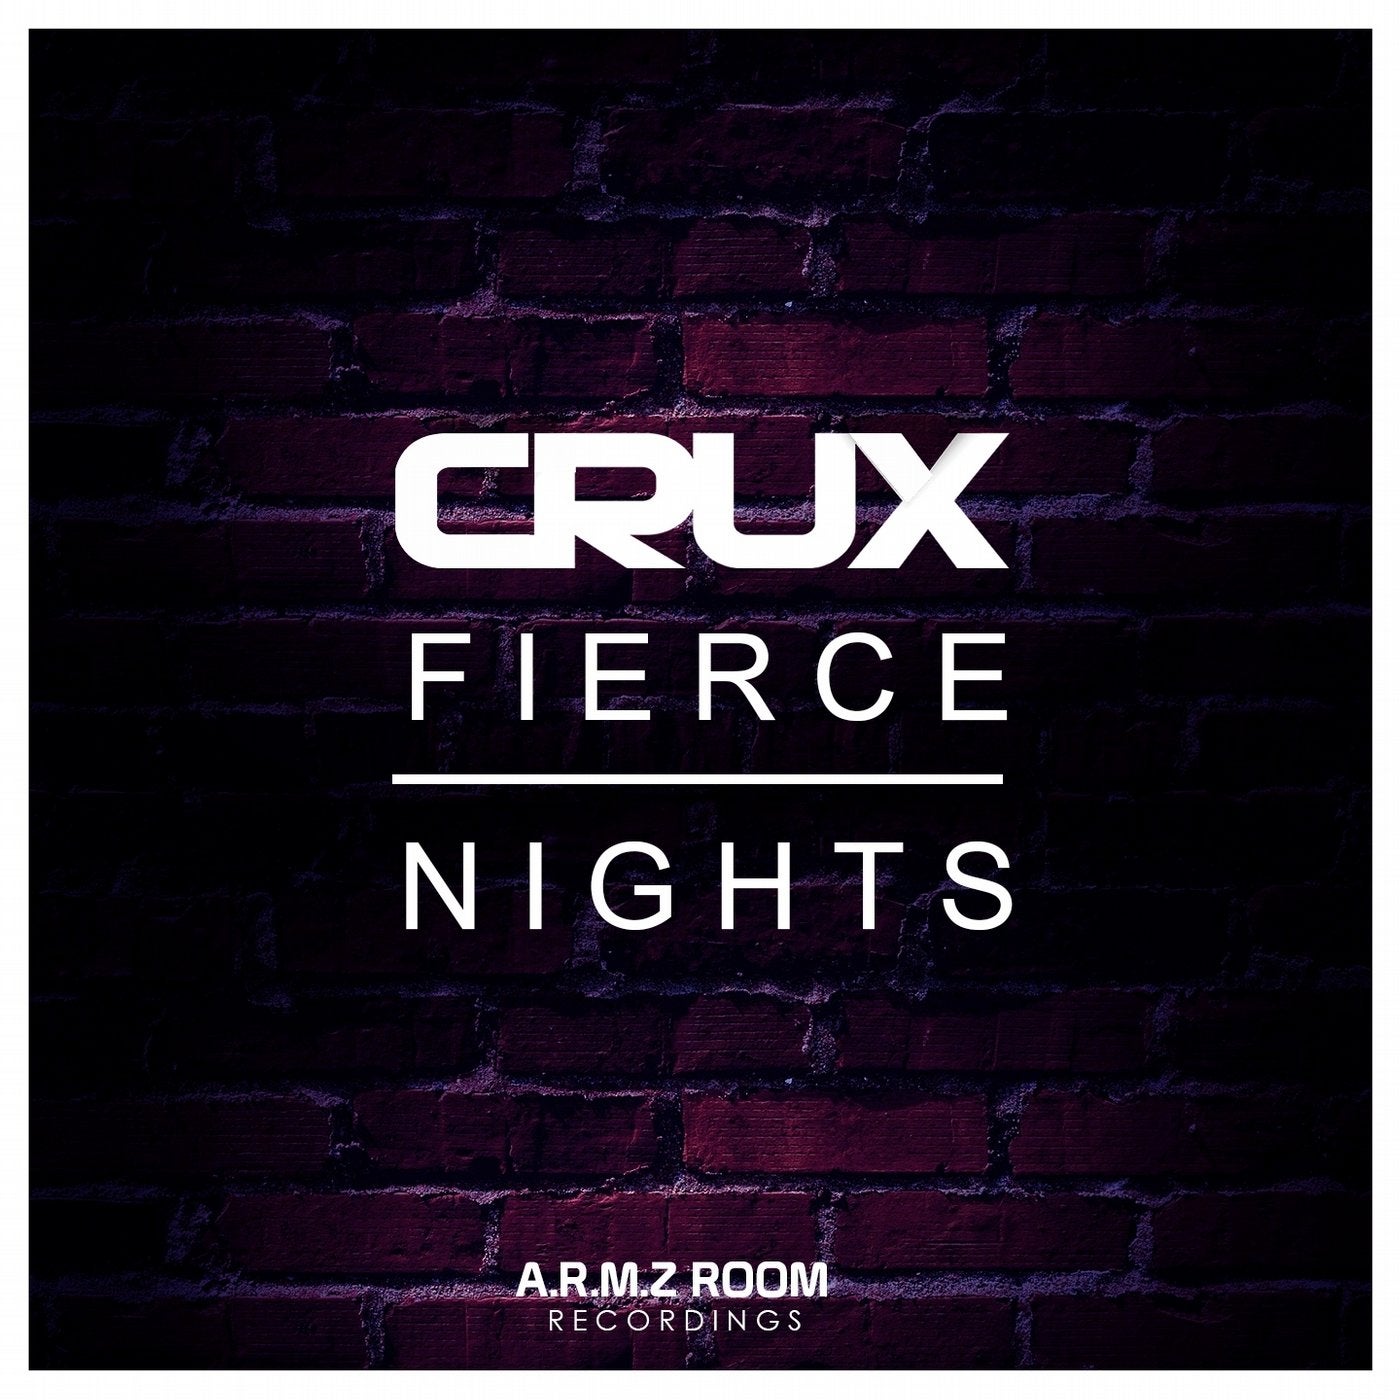 Fierce Nights [Club Mix]